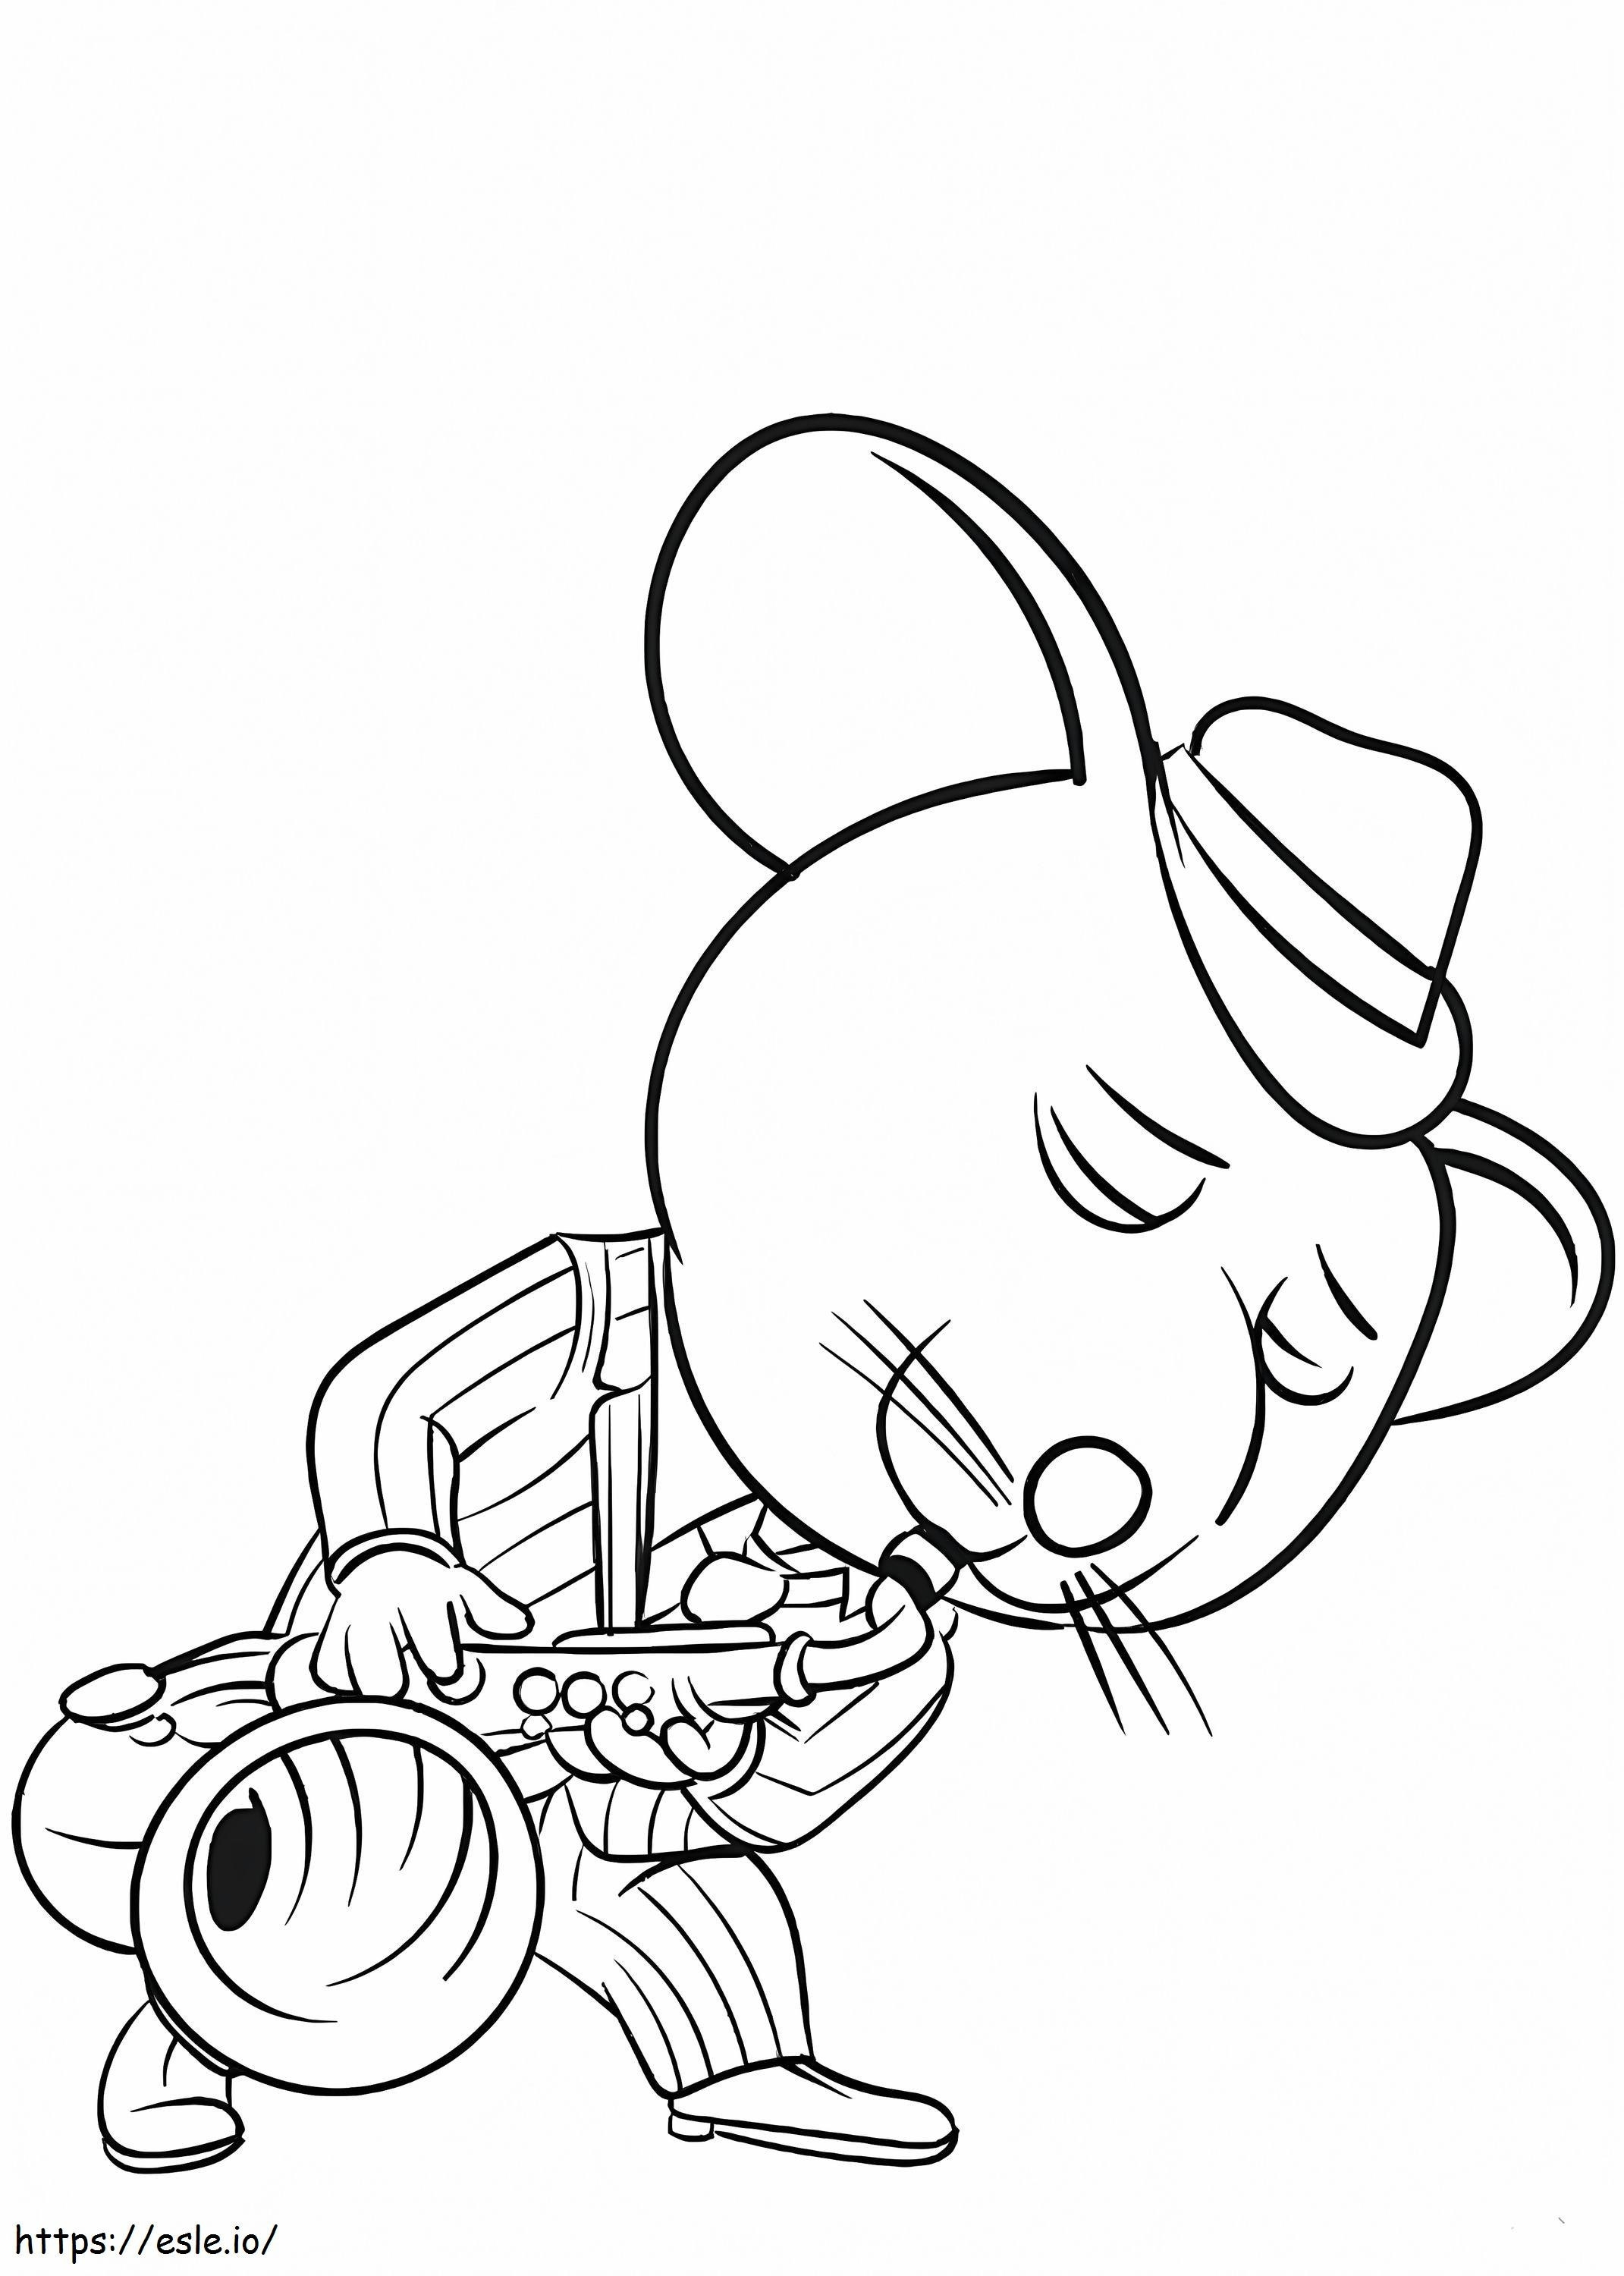 Maus spielt Saxophon ausmalbilder